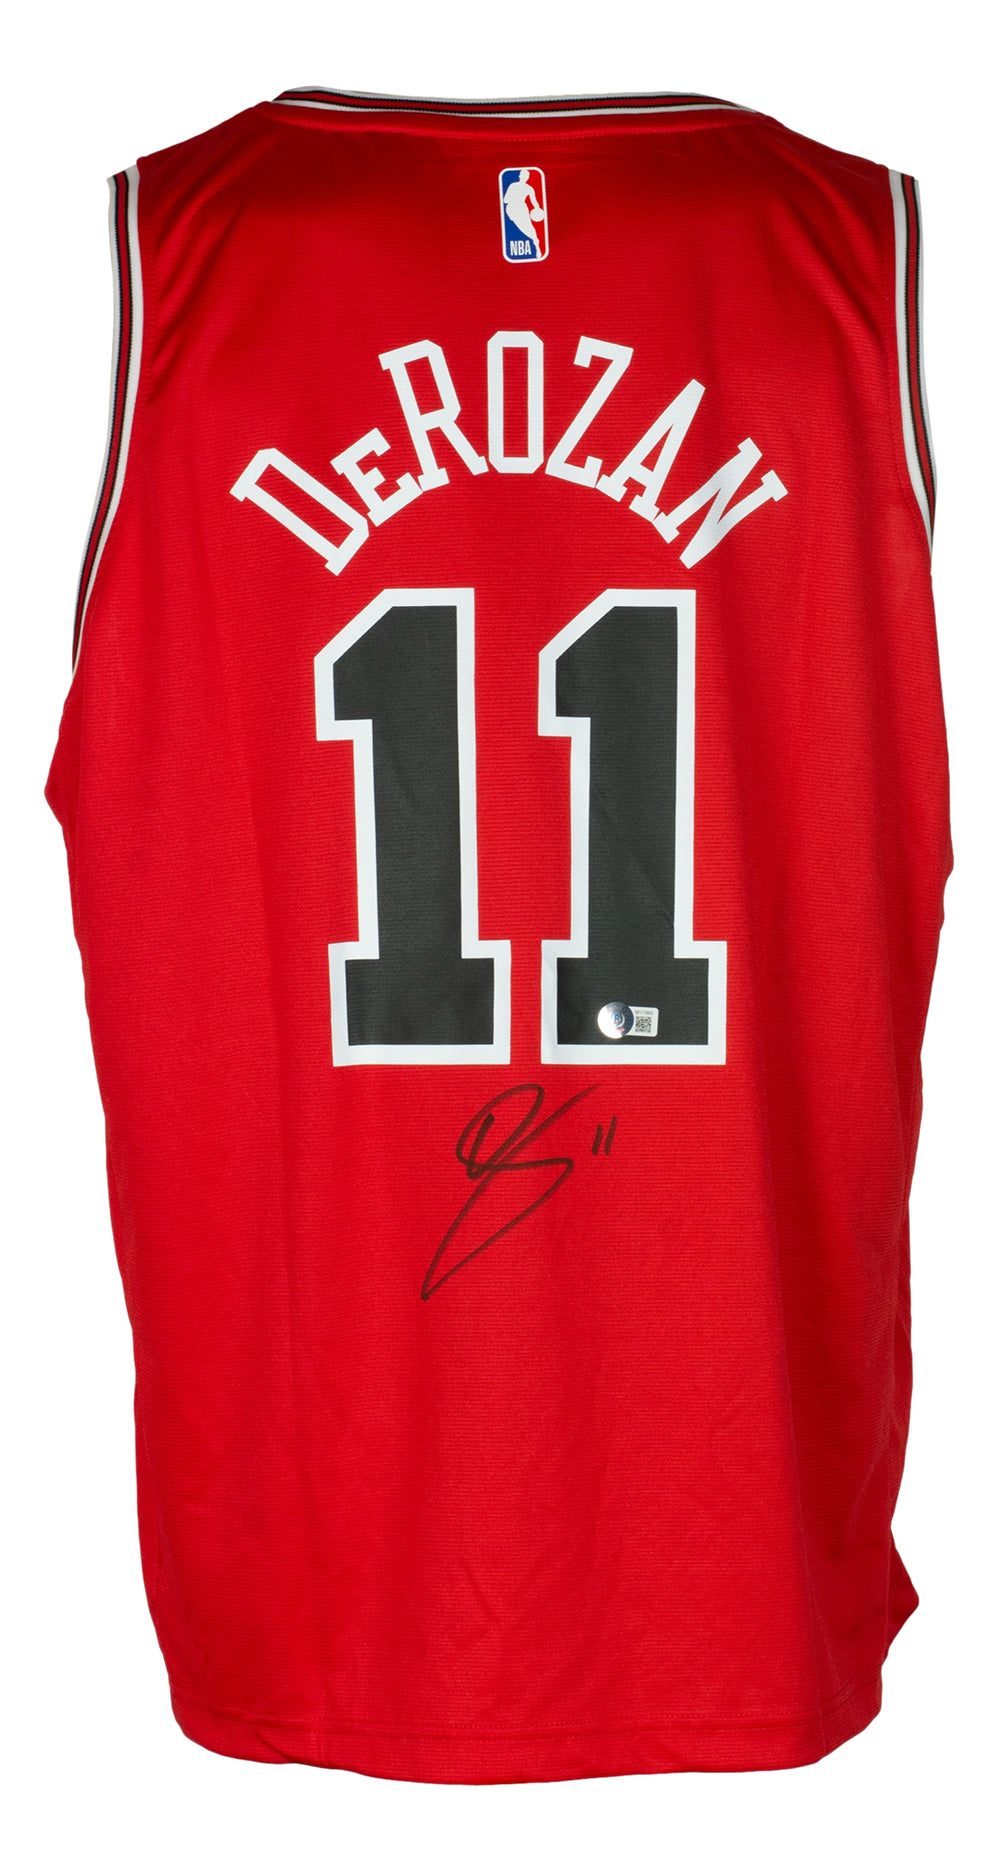 DeMar DeRozan Signed Chicago Bulls Red Fanatics Basketball Jersey